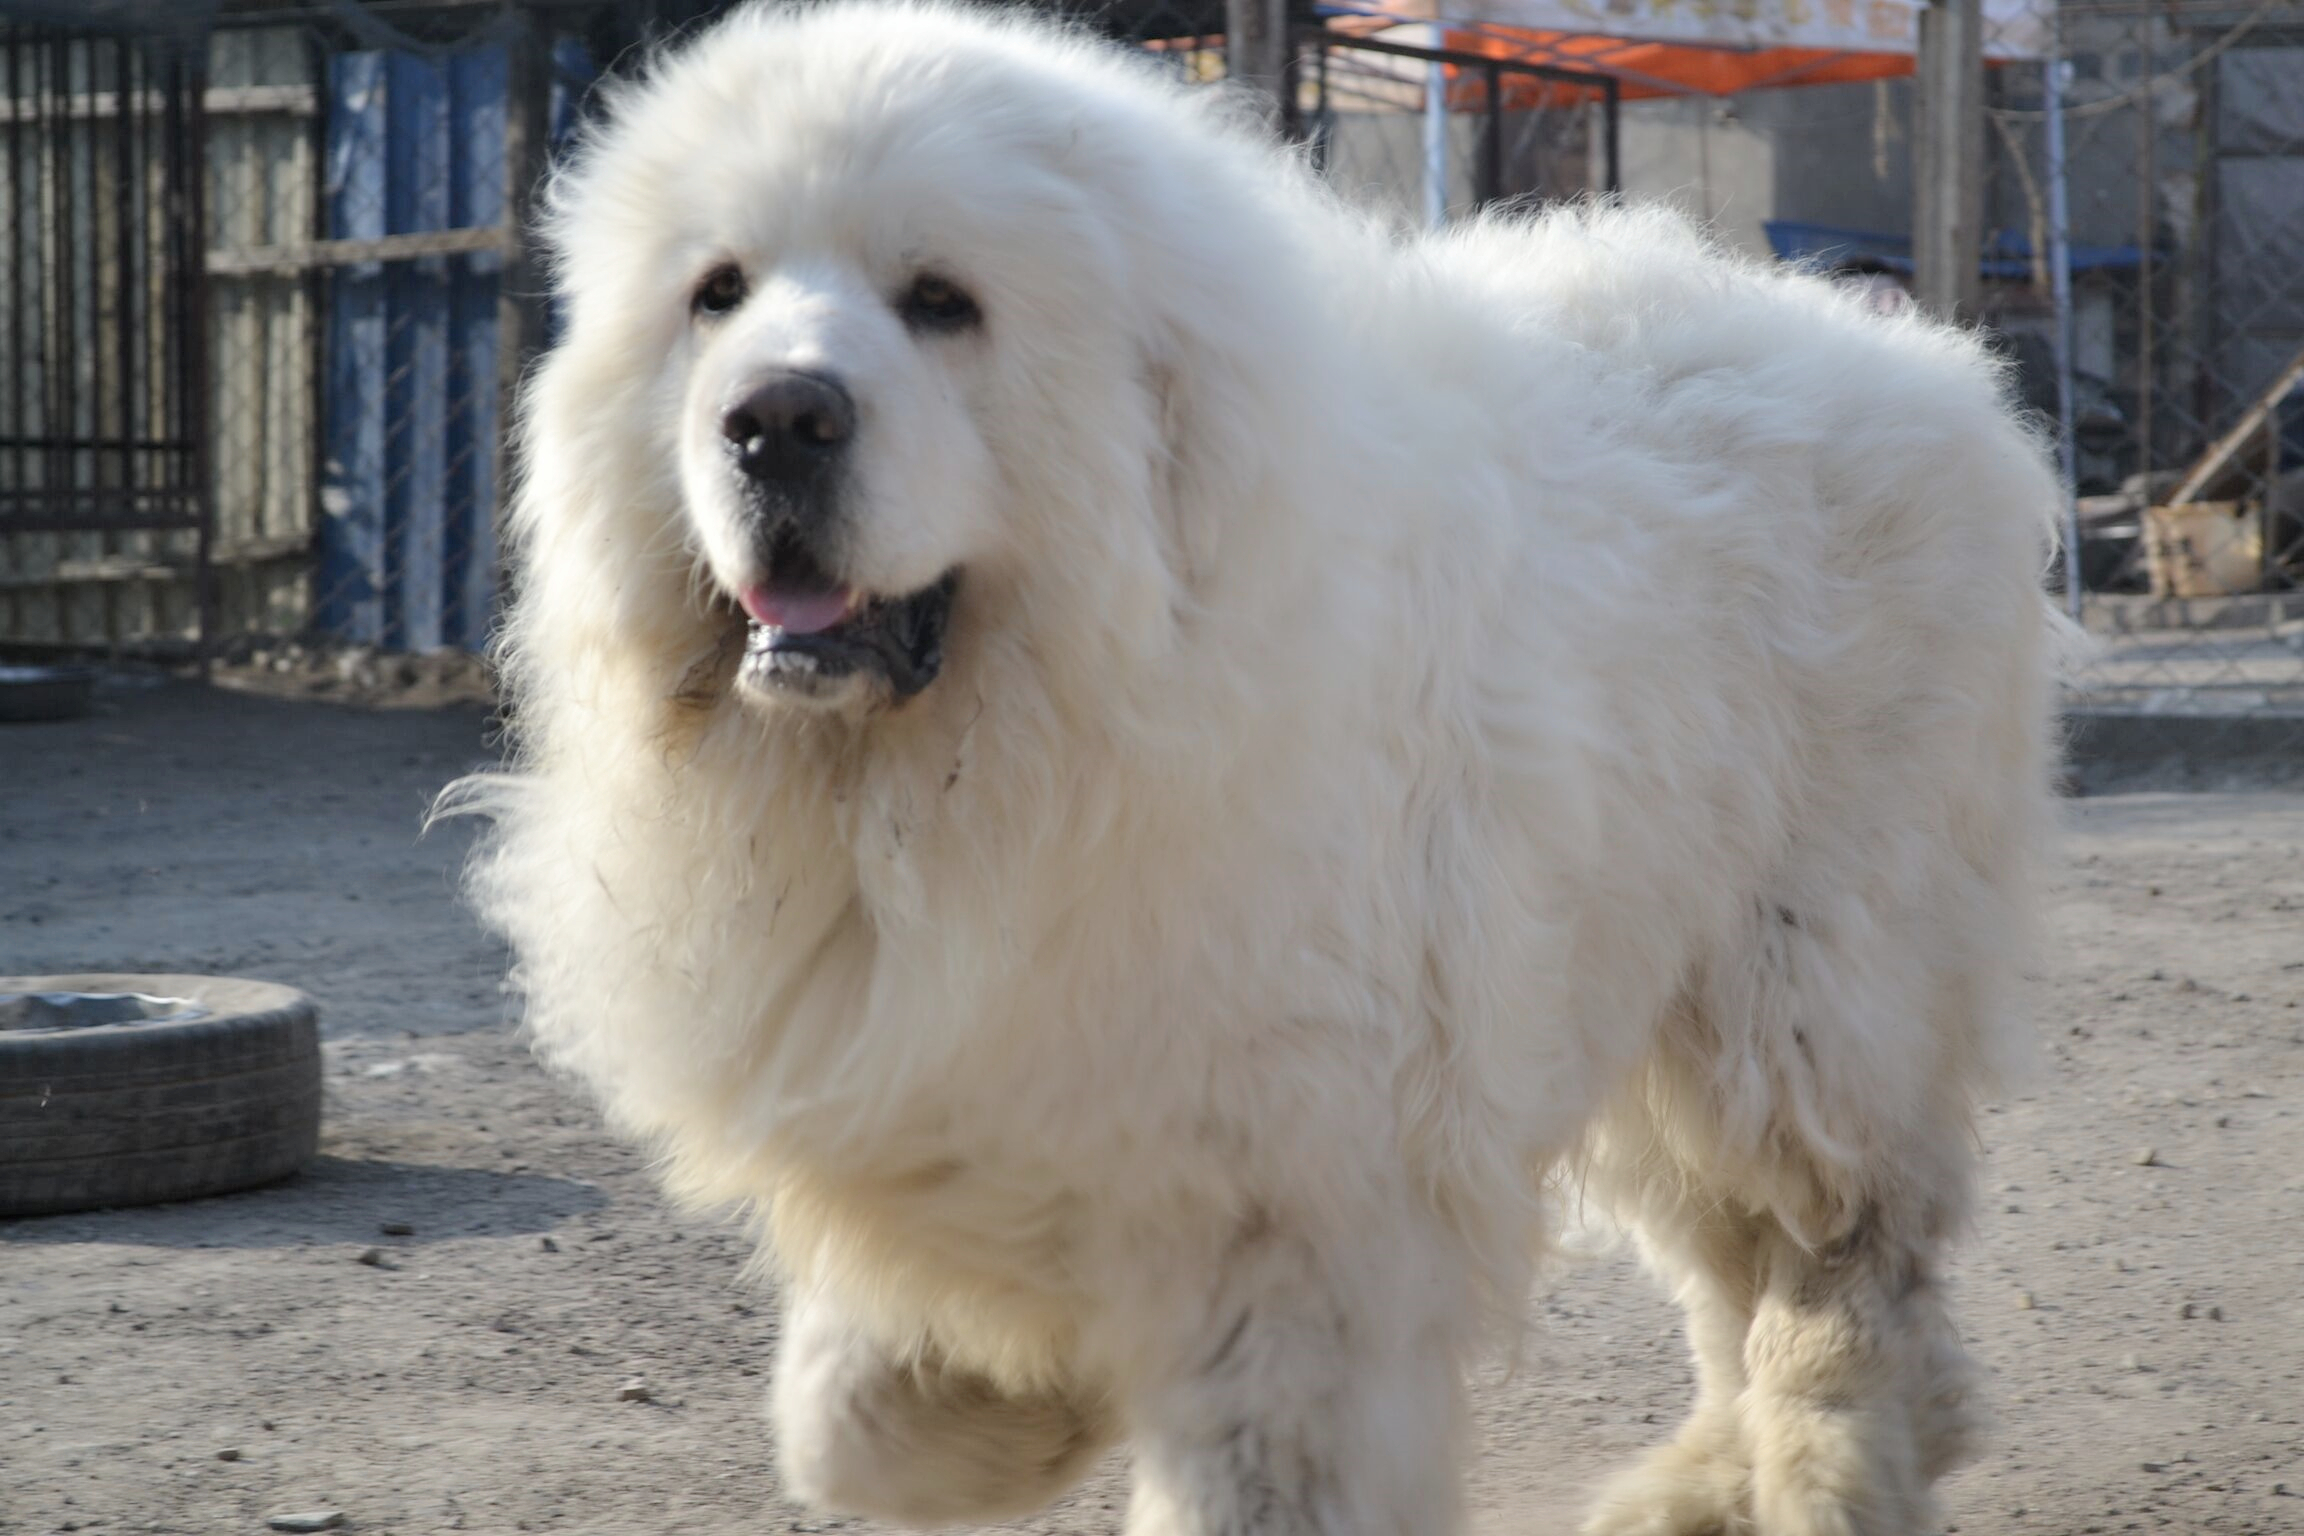 大白熊是世界上最漂亮的犬种,那如何挑选大白熊犬呢?